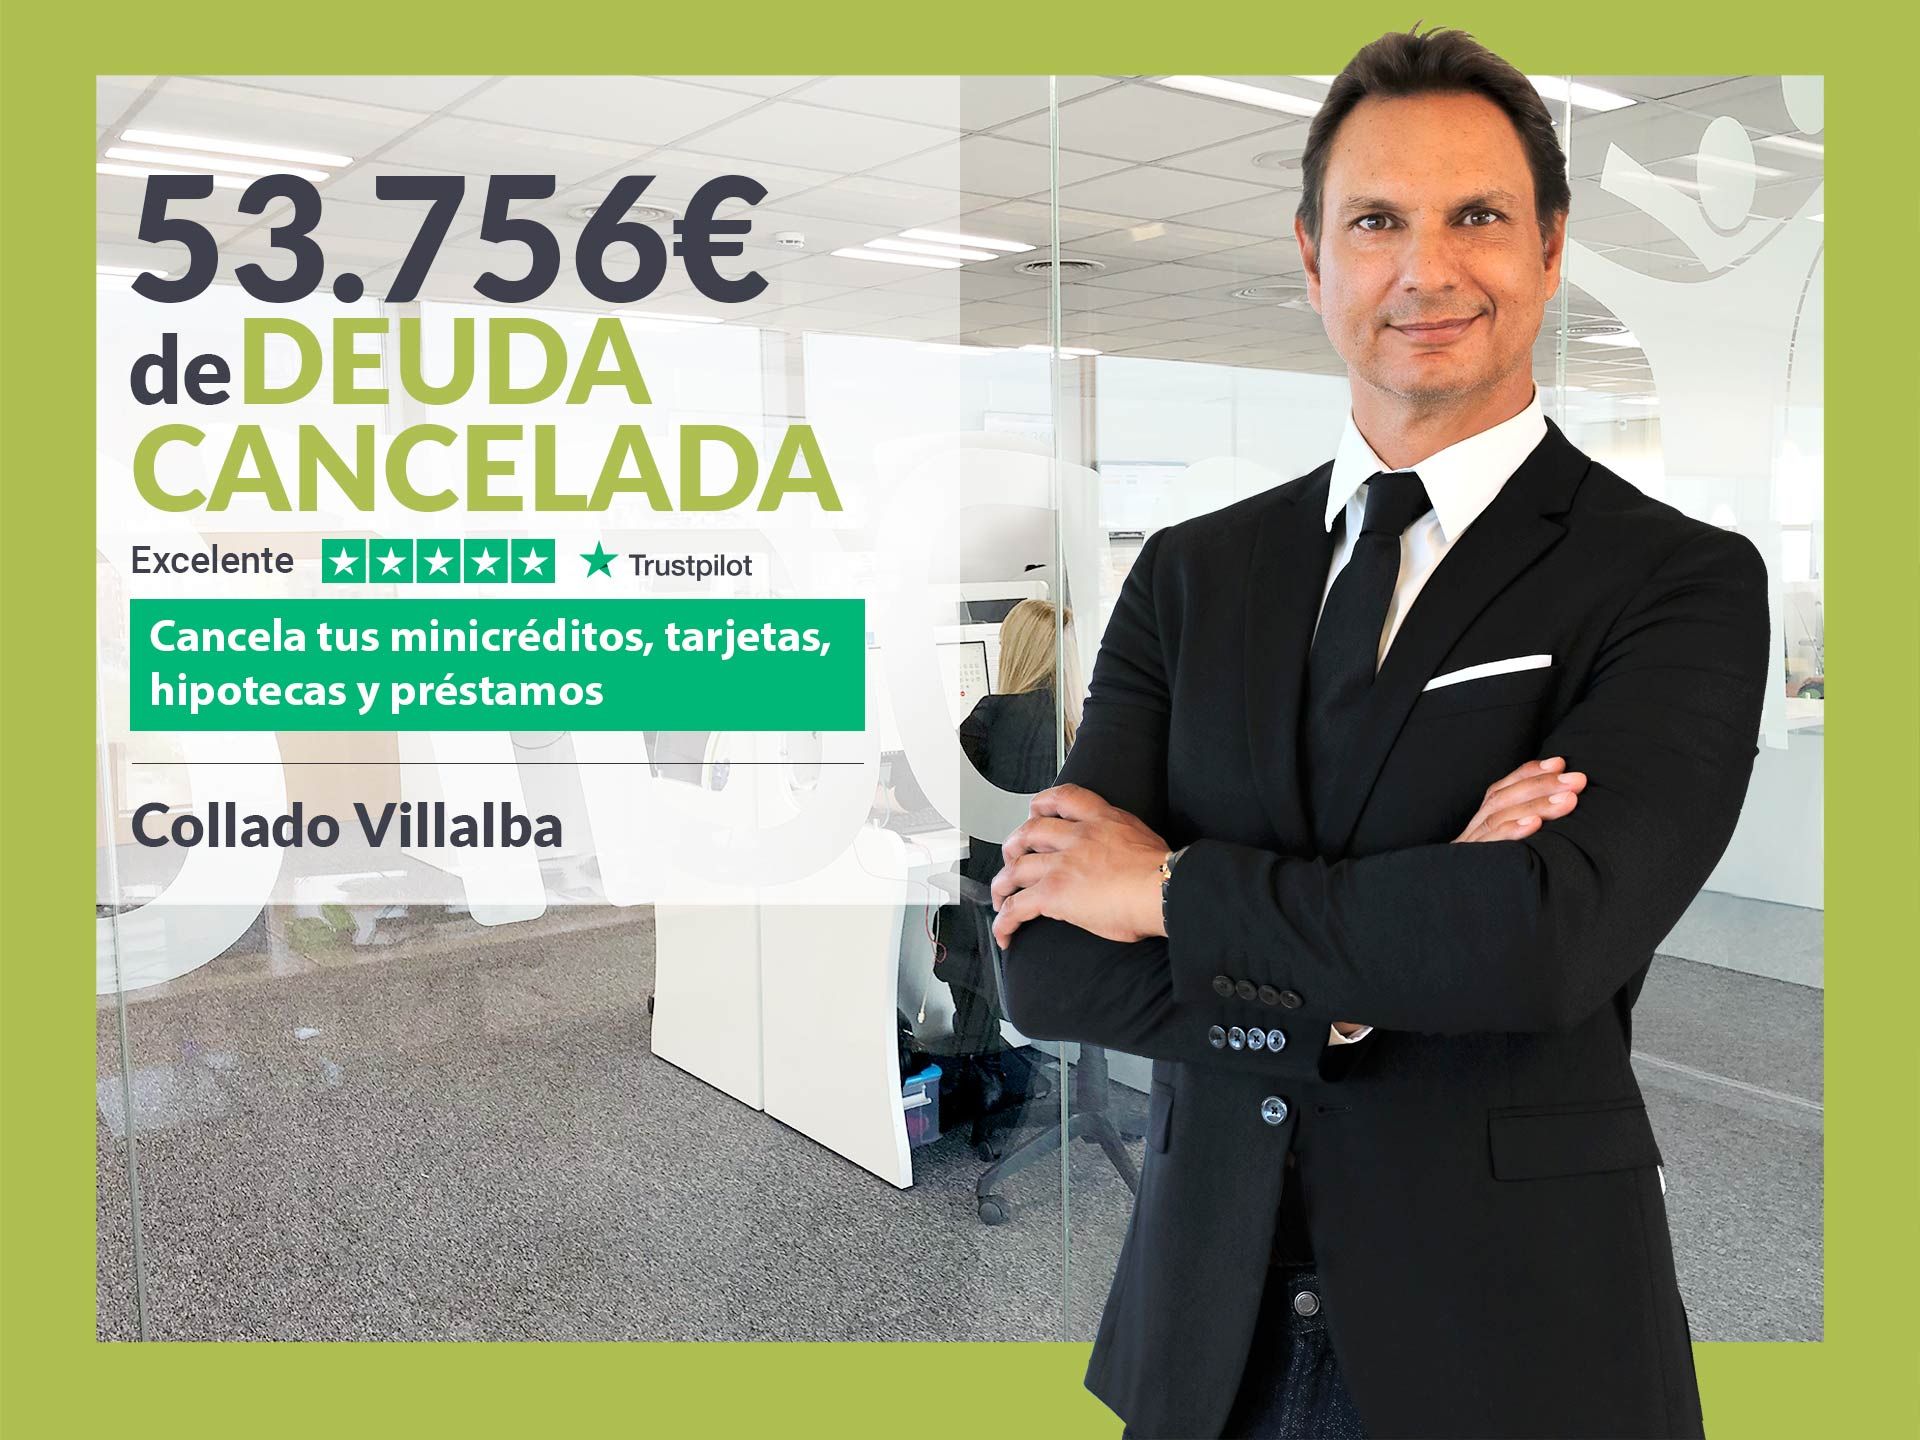 Repara tu Deuda Abogados cancela 53.756? en Collado Villalba (Madrid) con la Ley de Segunda Oportunidad